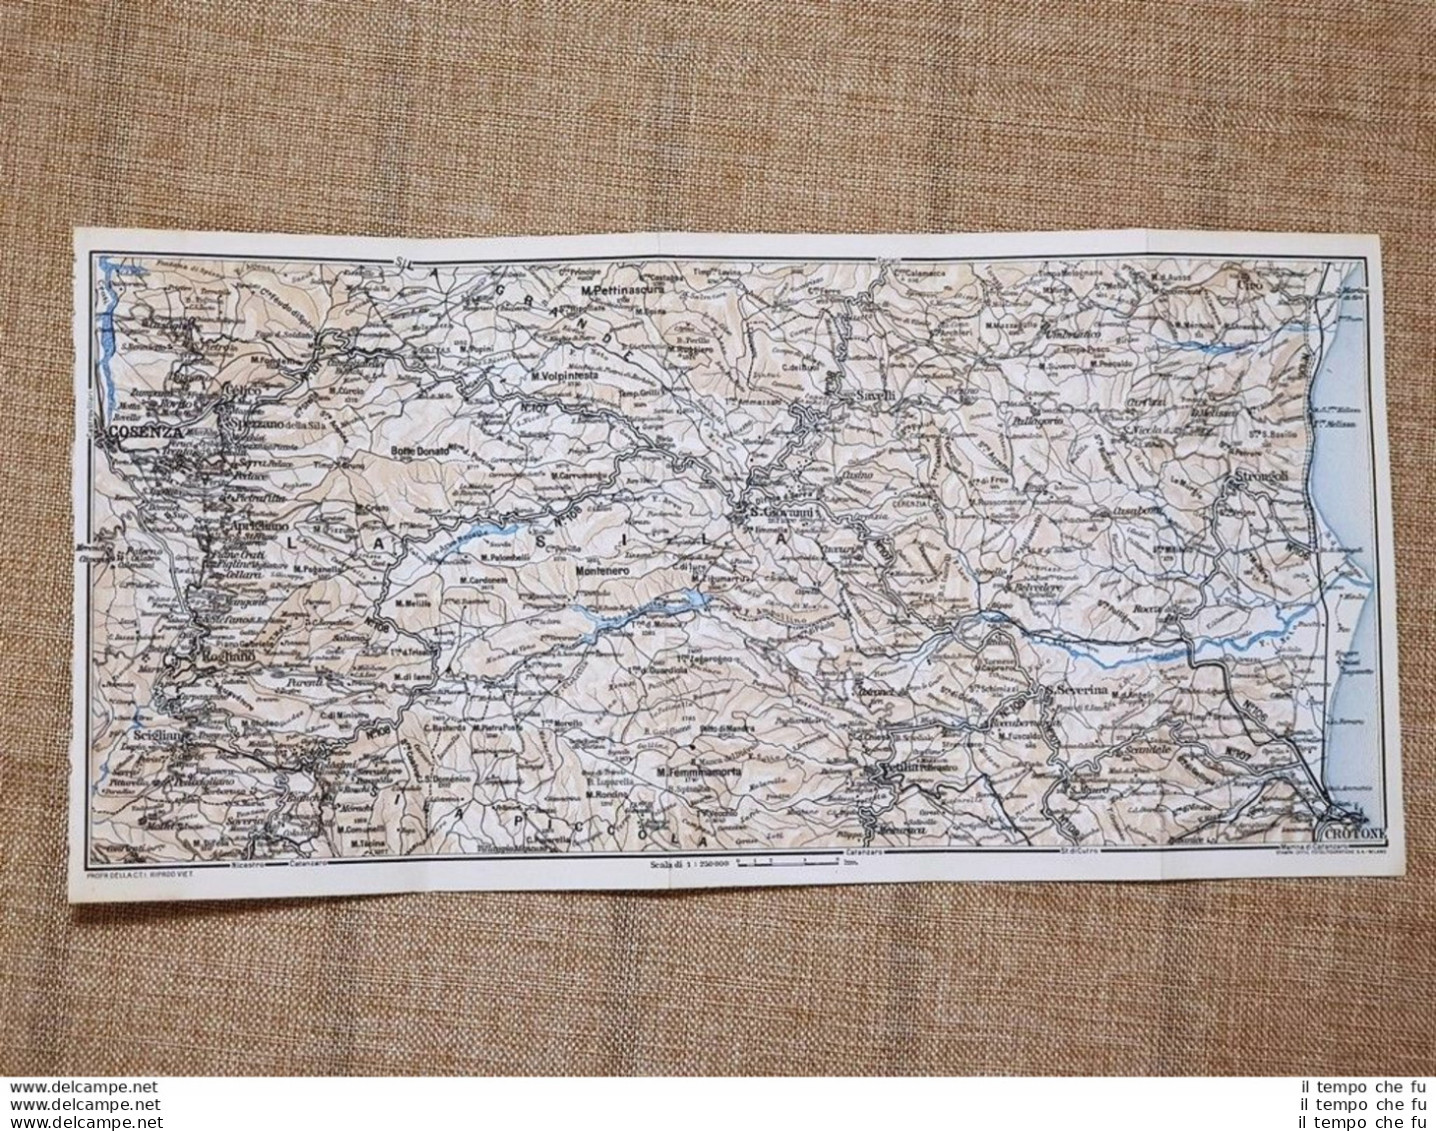 Carta Geografica O Mappa Del 1937 Crotone Montenero Cosenza Calabria T.C.I. - Cartes Géographiques